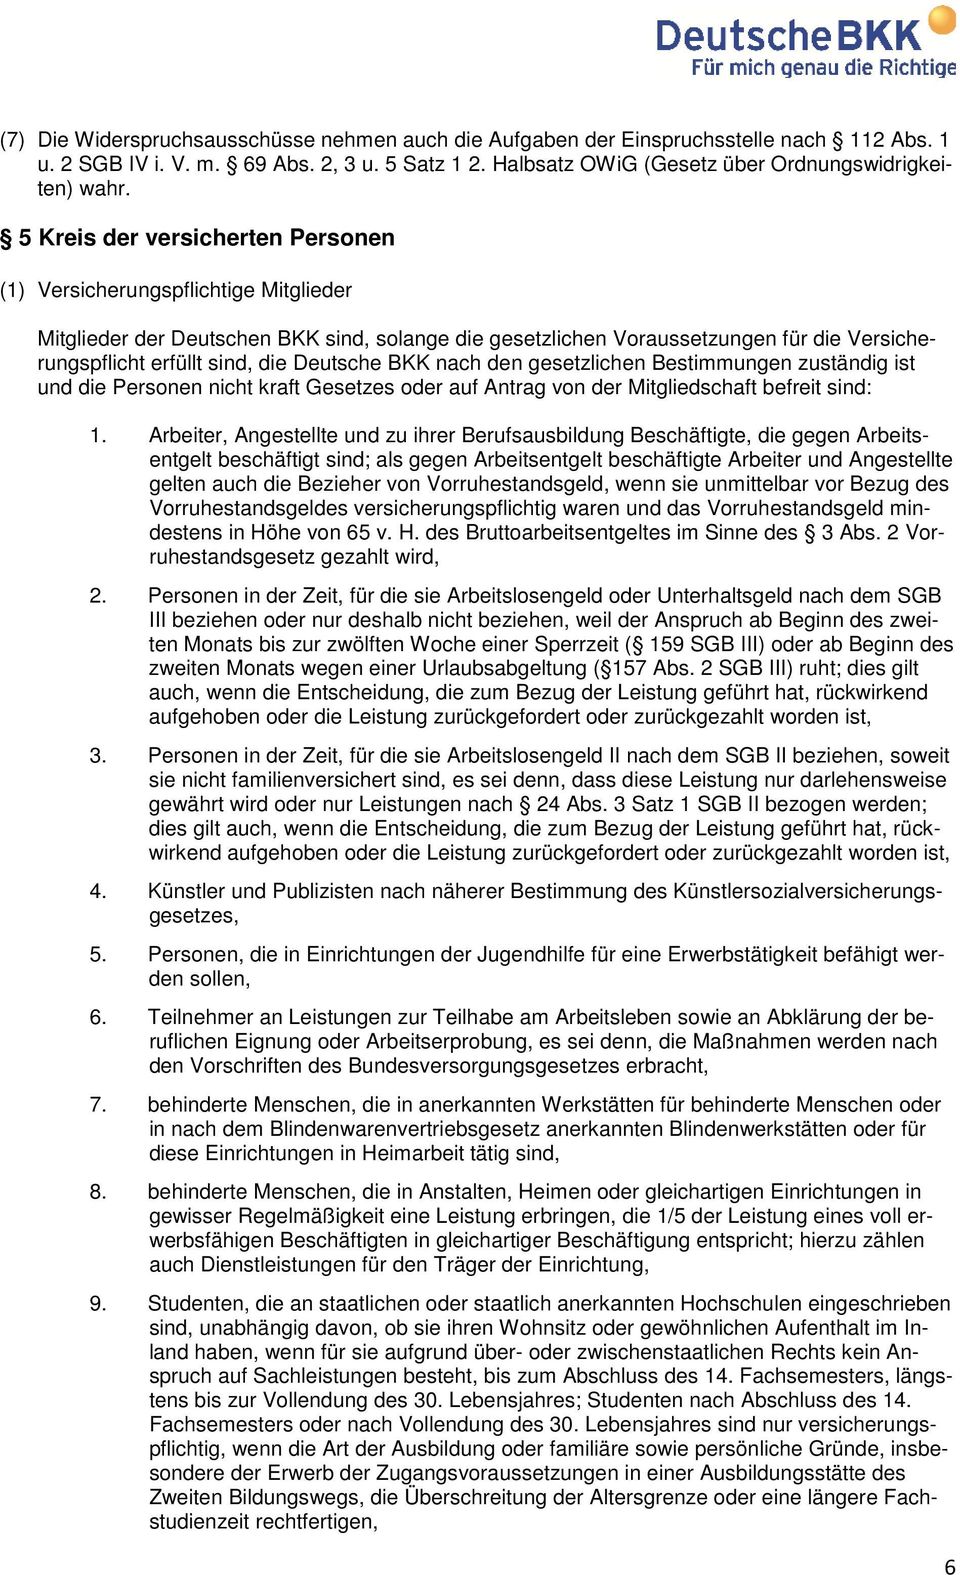 Deutsche BKK nach den gesetzlichen Bestimmungen zuständig ist und die Personen nicht kraft Gesetzes oder auf Antrag von der Mitgliedschaft befreit sind: 1.